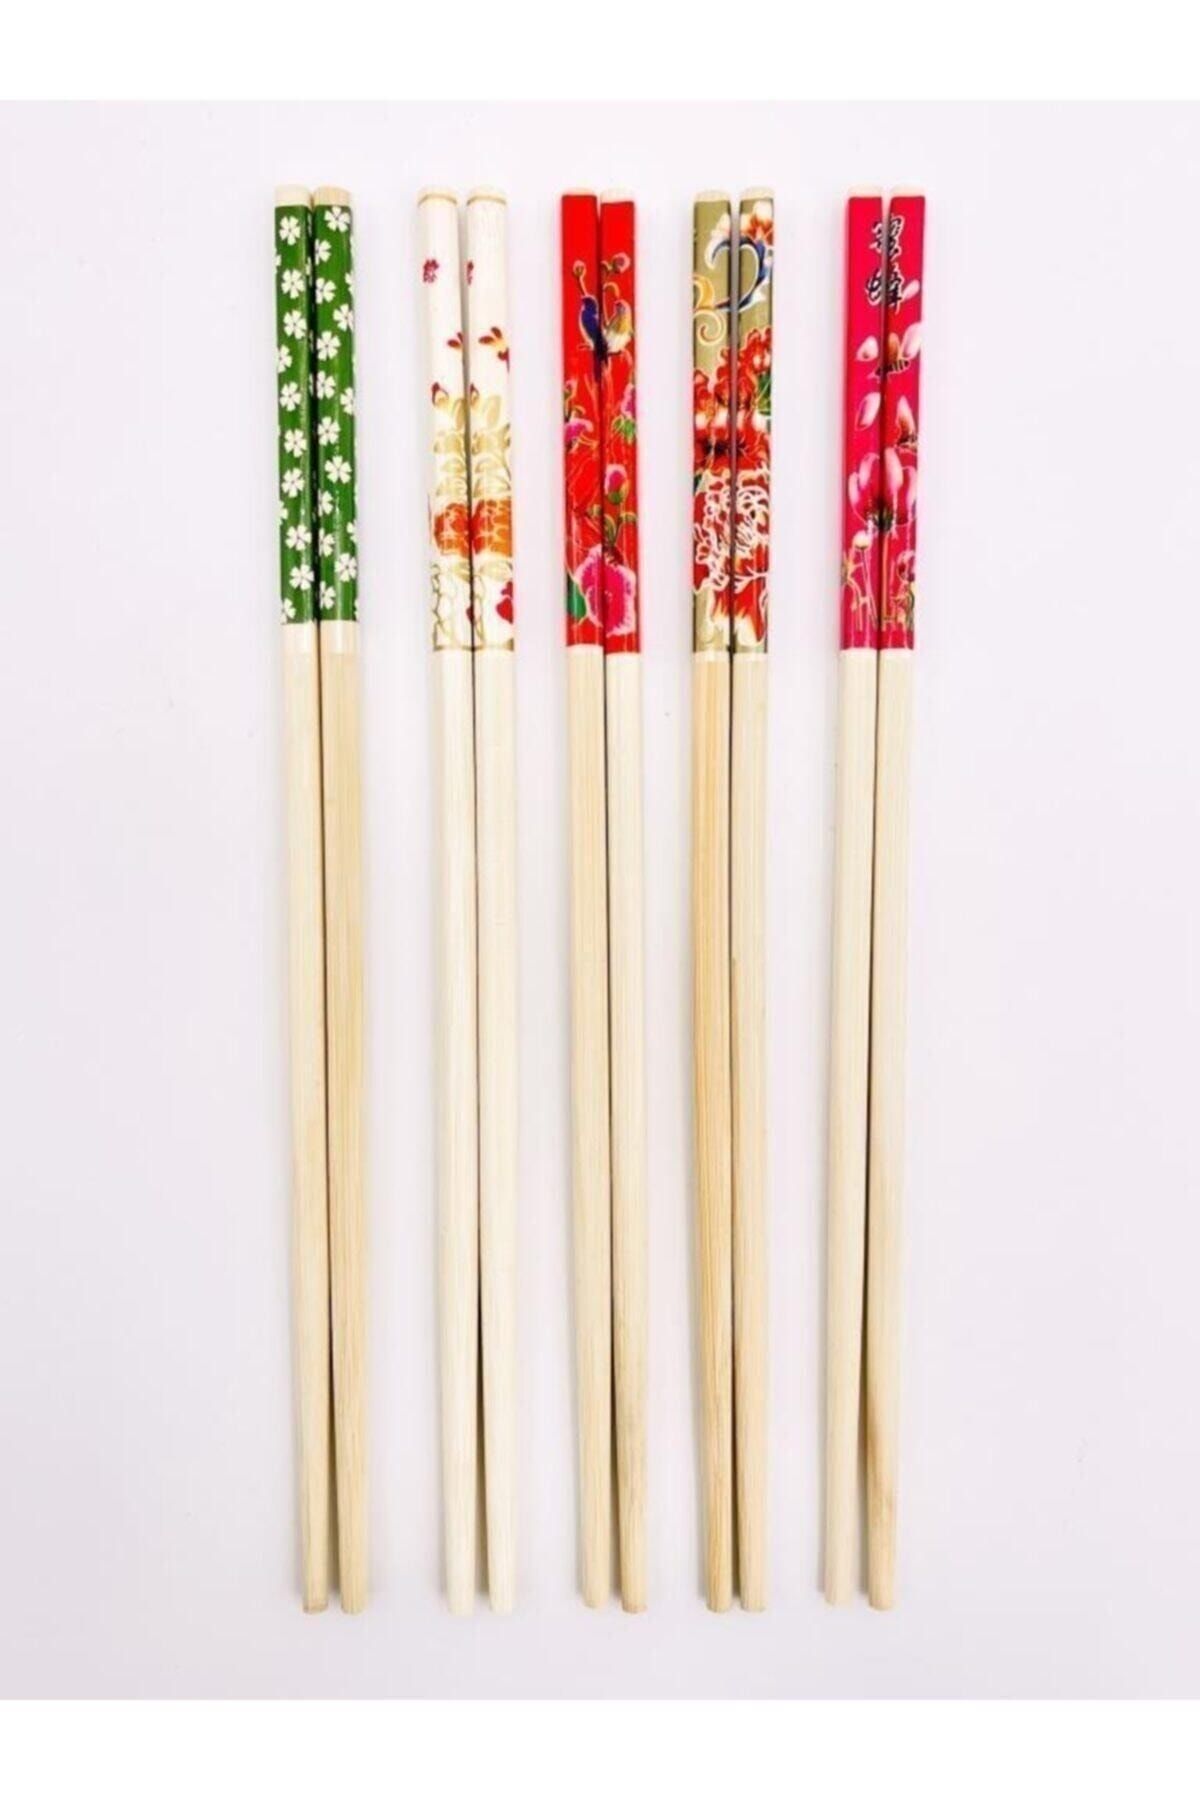 PEGA HOME Bambu Chopstick